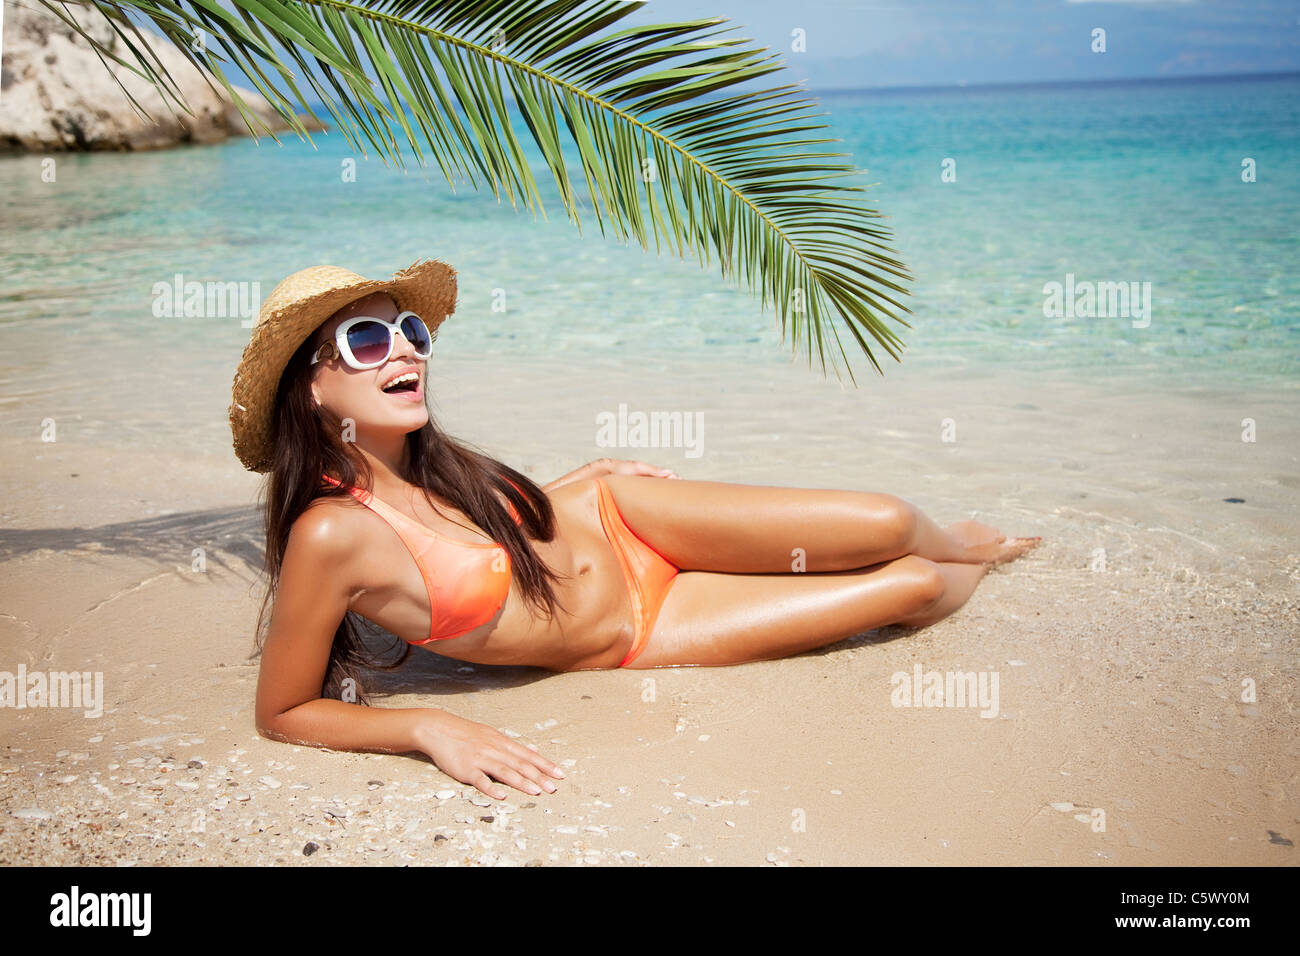 female sunbathing Stock Photo